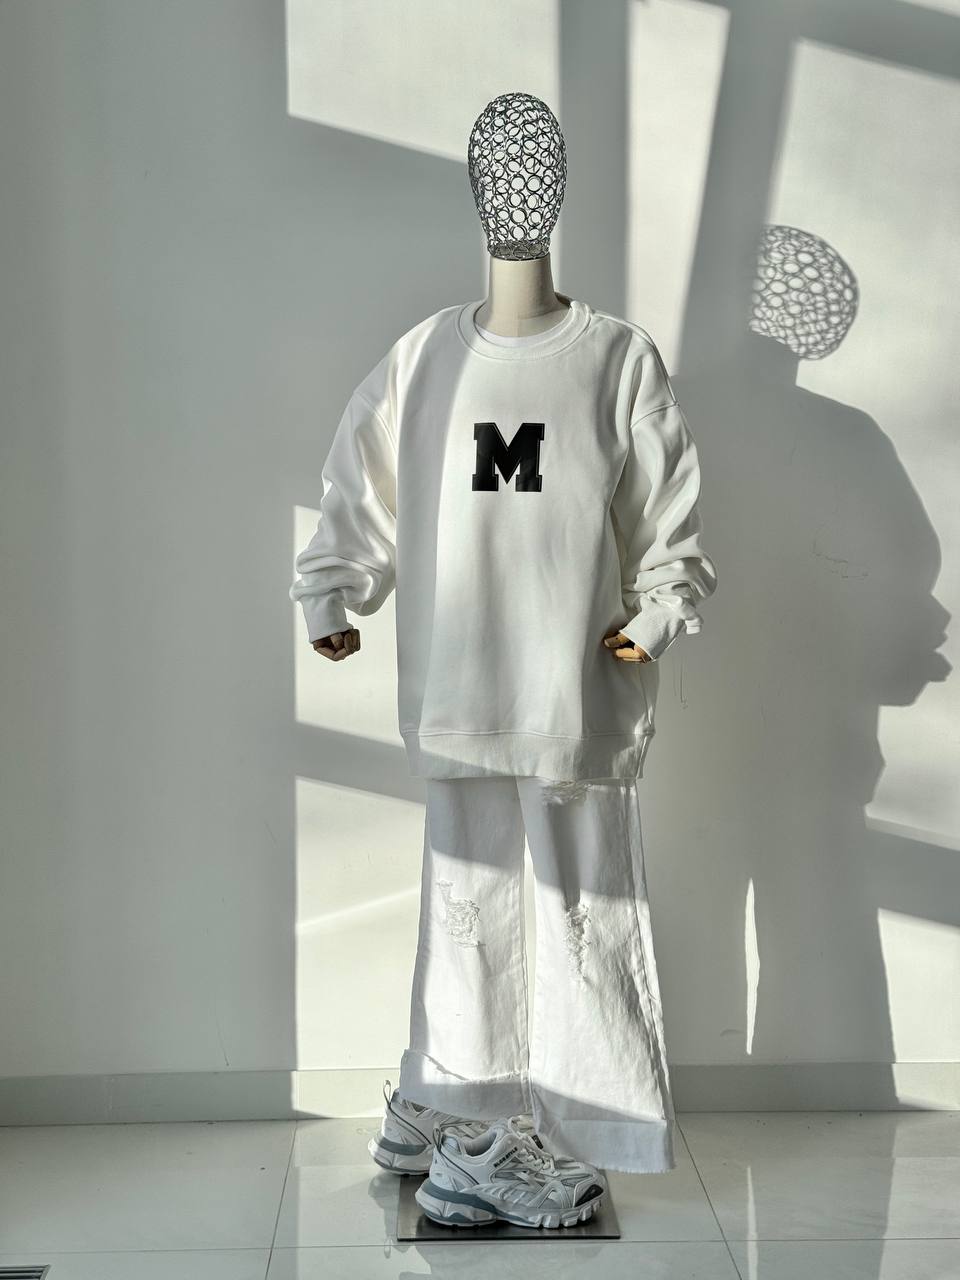 LuBlu Sweatshirt "M" White